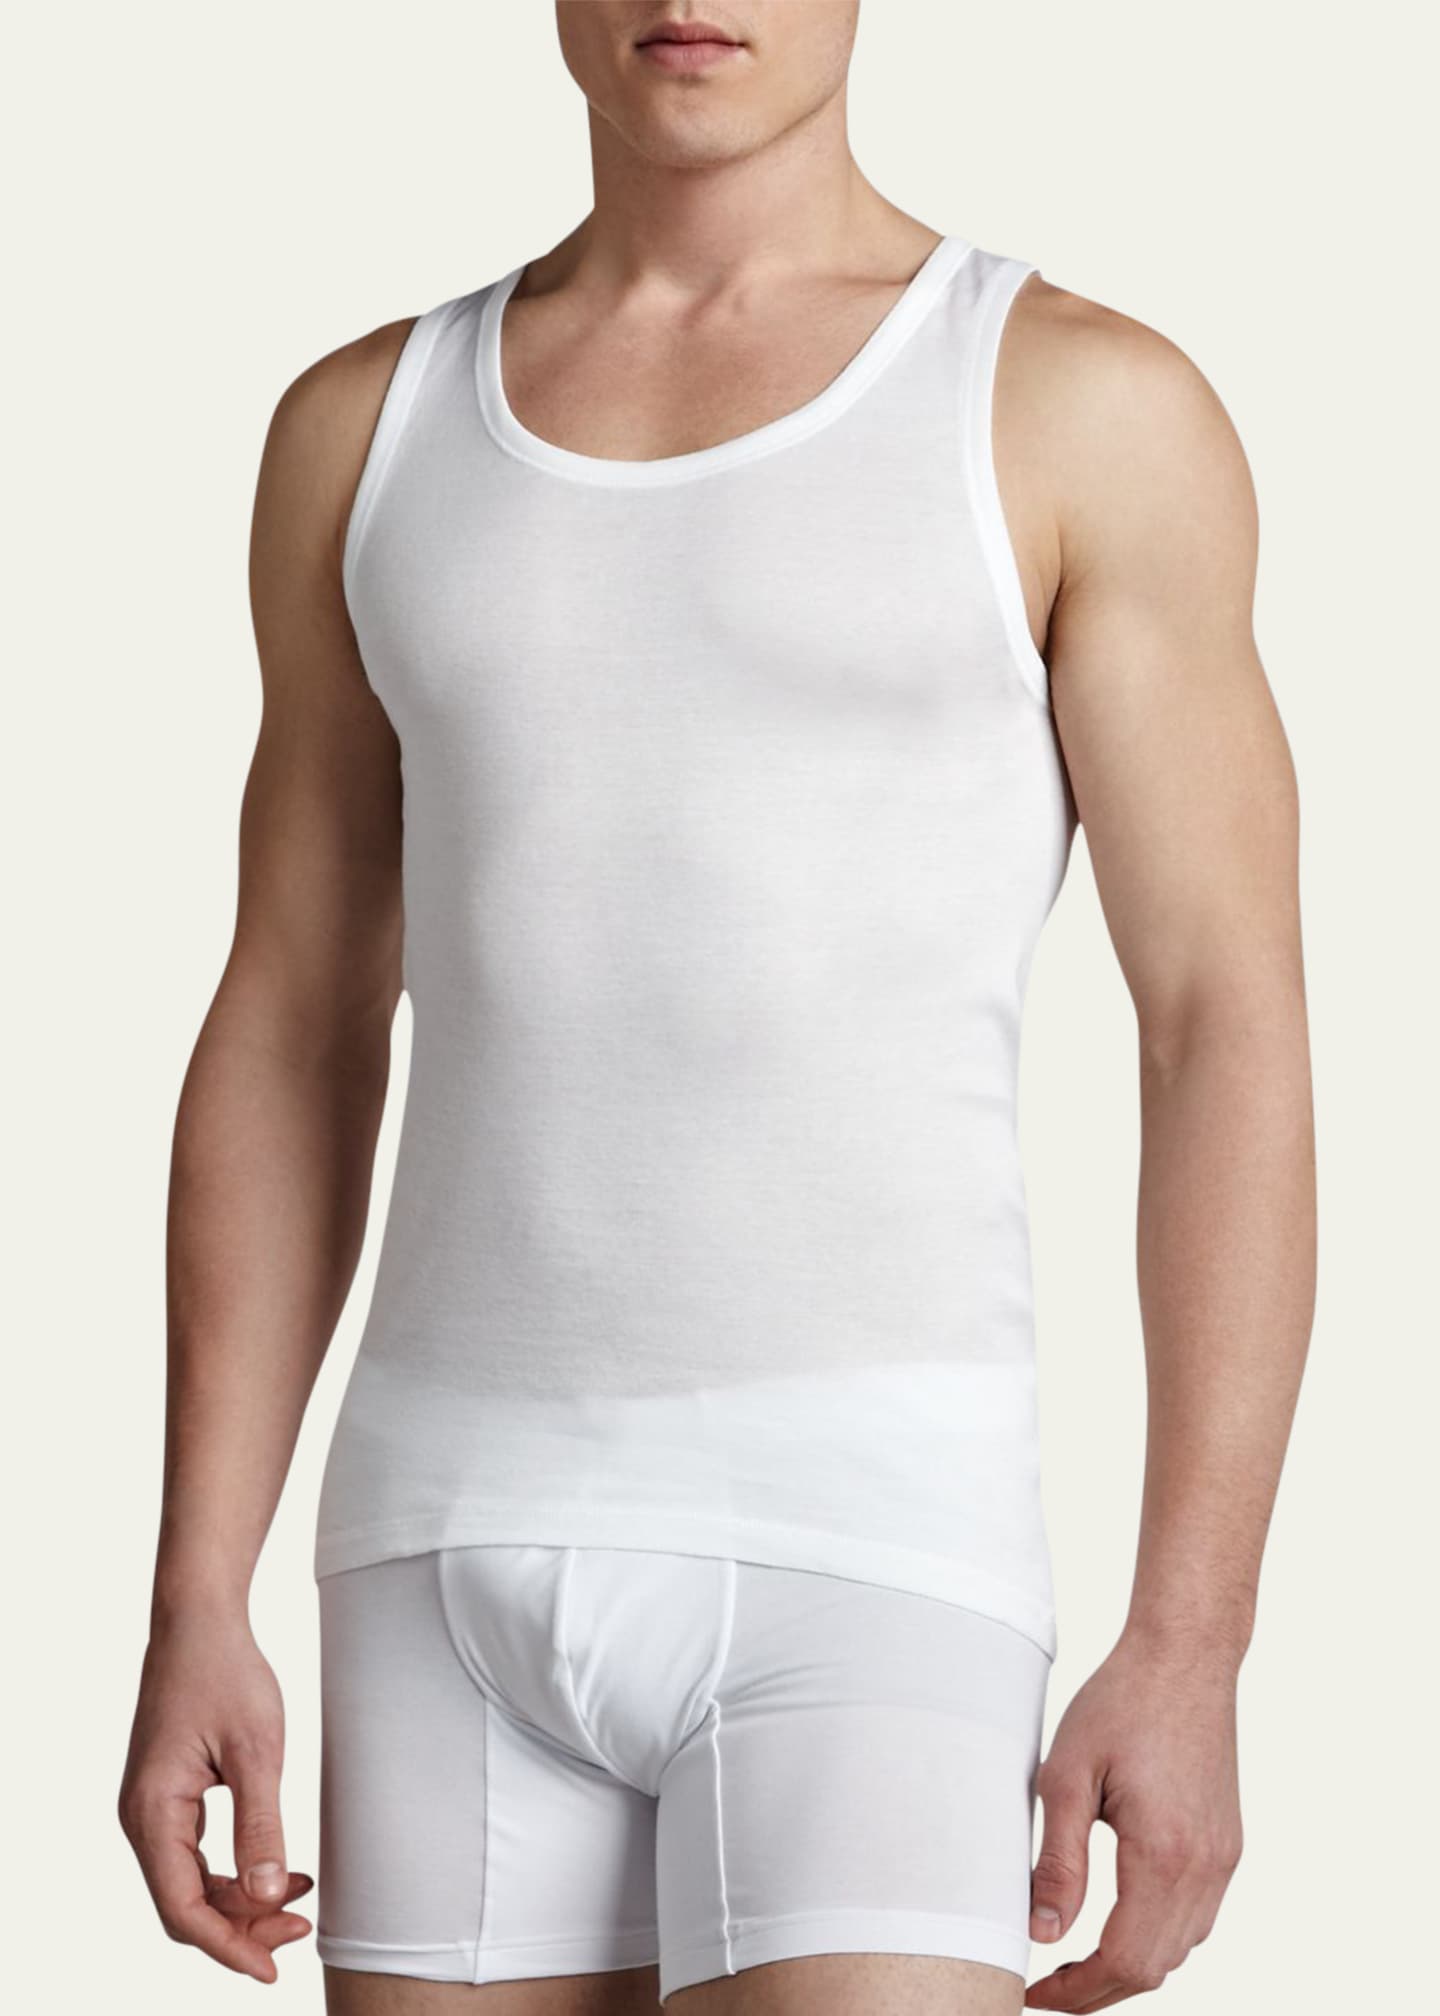 Hanro Cotton Vest Tops and Cotton Briefs